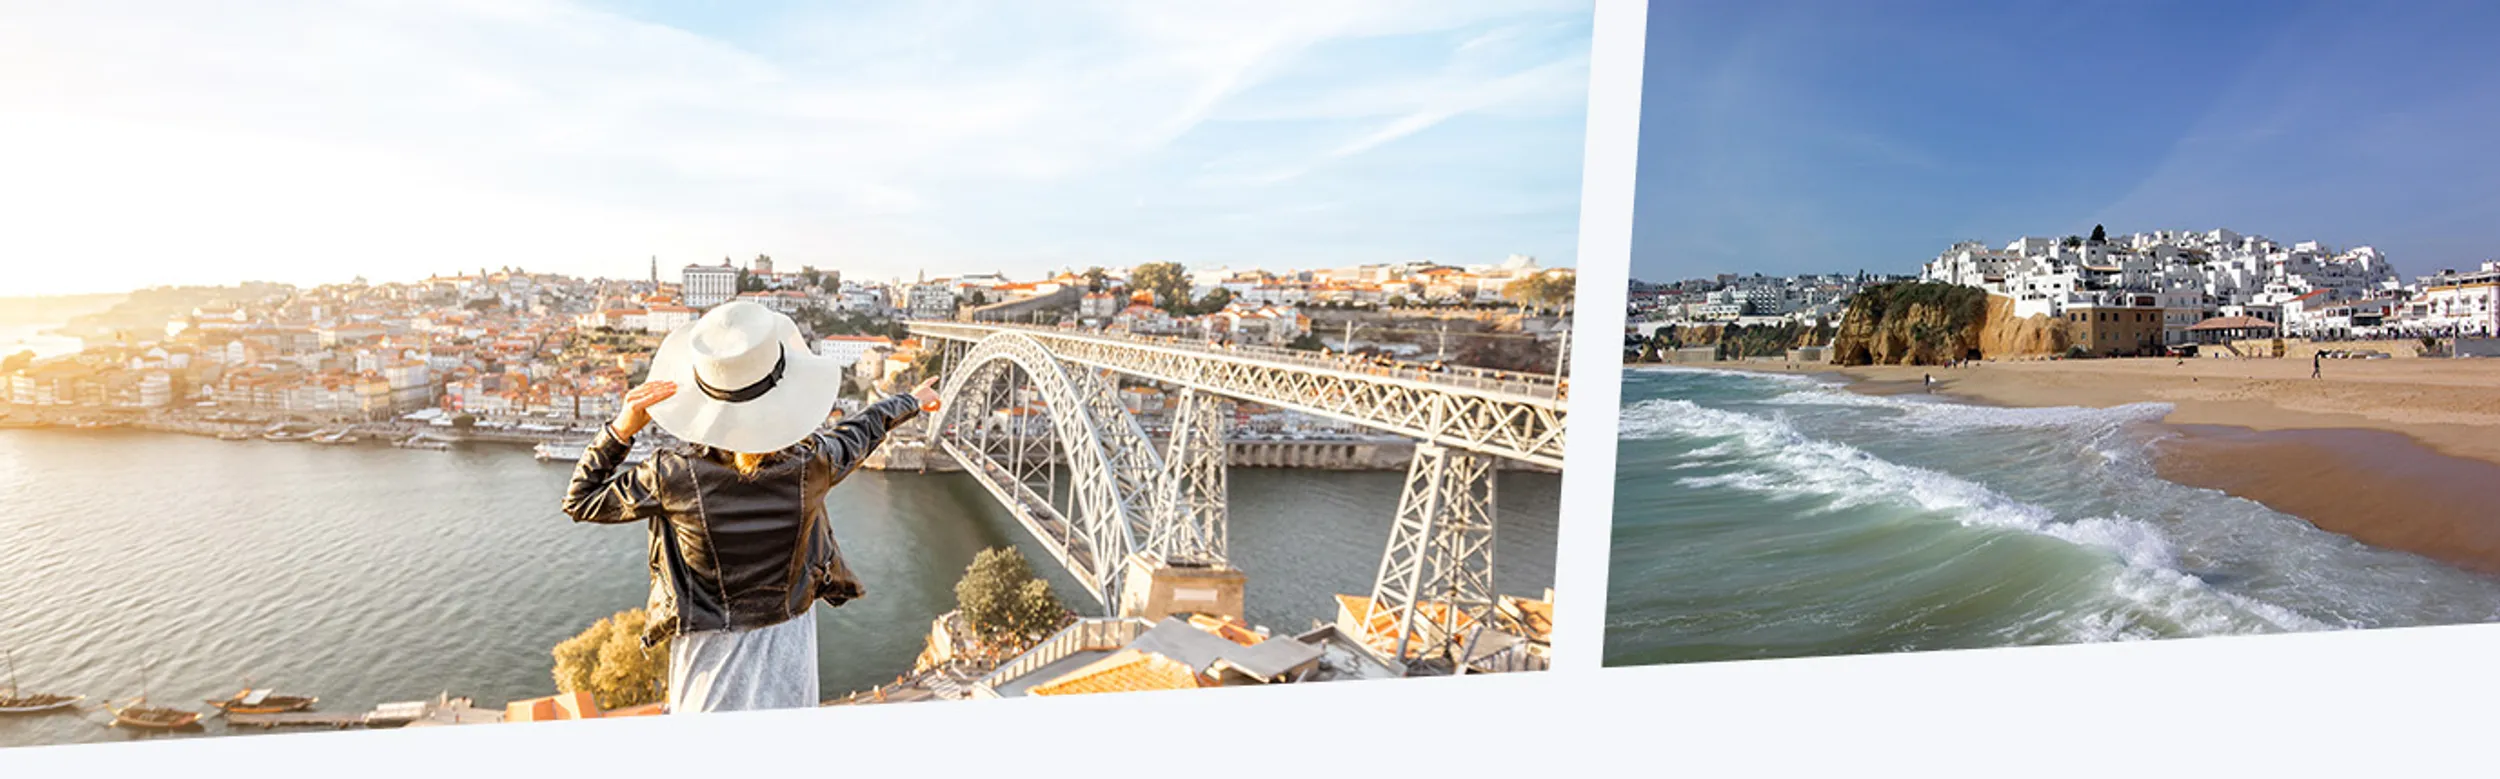 Fluss und Brücke in der Stadt Porto in Portugal